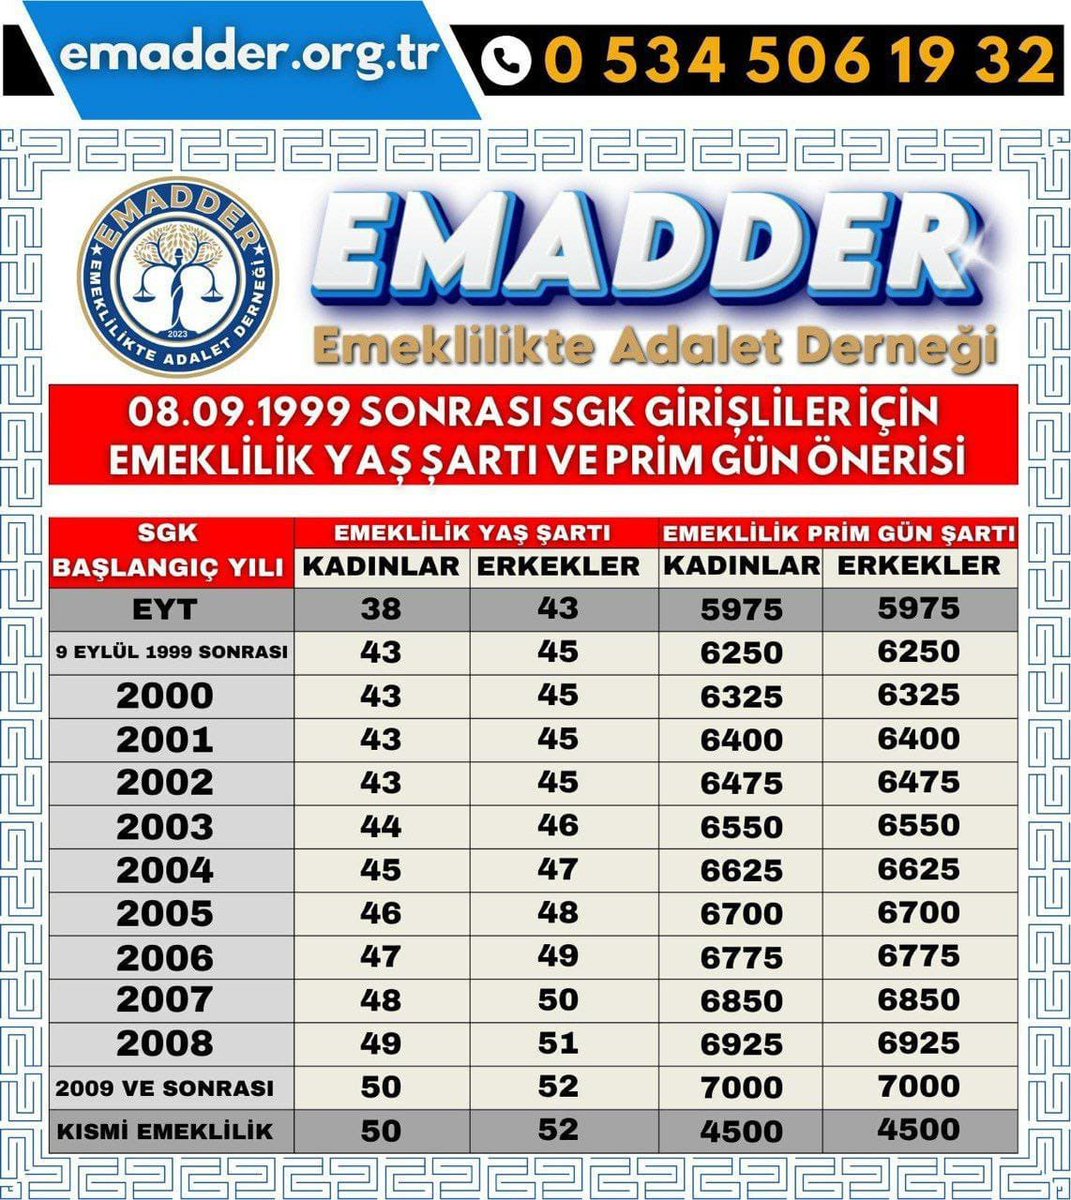 @tv100 @DenizGurel06 @aliihsanyavuz54 4 milyon ağırlık istanbulda yaşayan
2000li sgklı çalışanlar adil adaletli kademeli emeklilik bekliyor.

Seçimde büyük, belirliyici rol oynayacaktır.

Kademeli emeklilik yumuşak geçiş ile sağlanmalıdır.
@DenizGurel06 
@aliihsanyavuz54 
#tv100özel
#AdaletİçinKademeMeclise